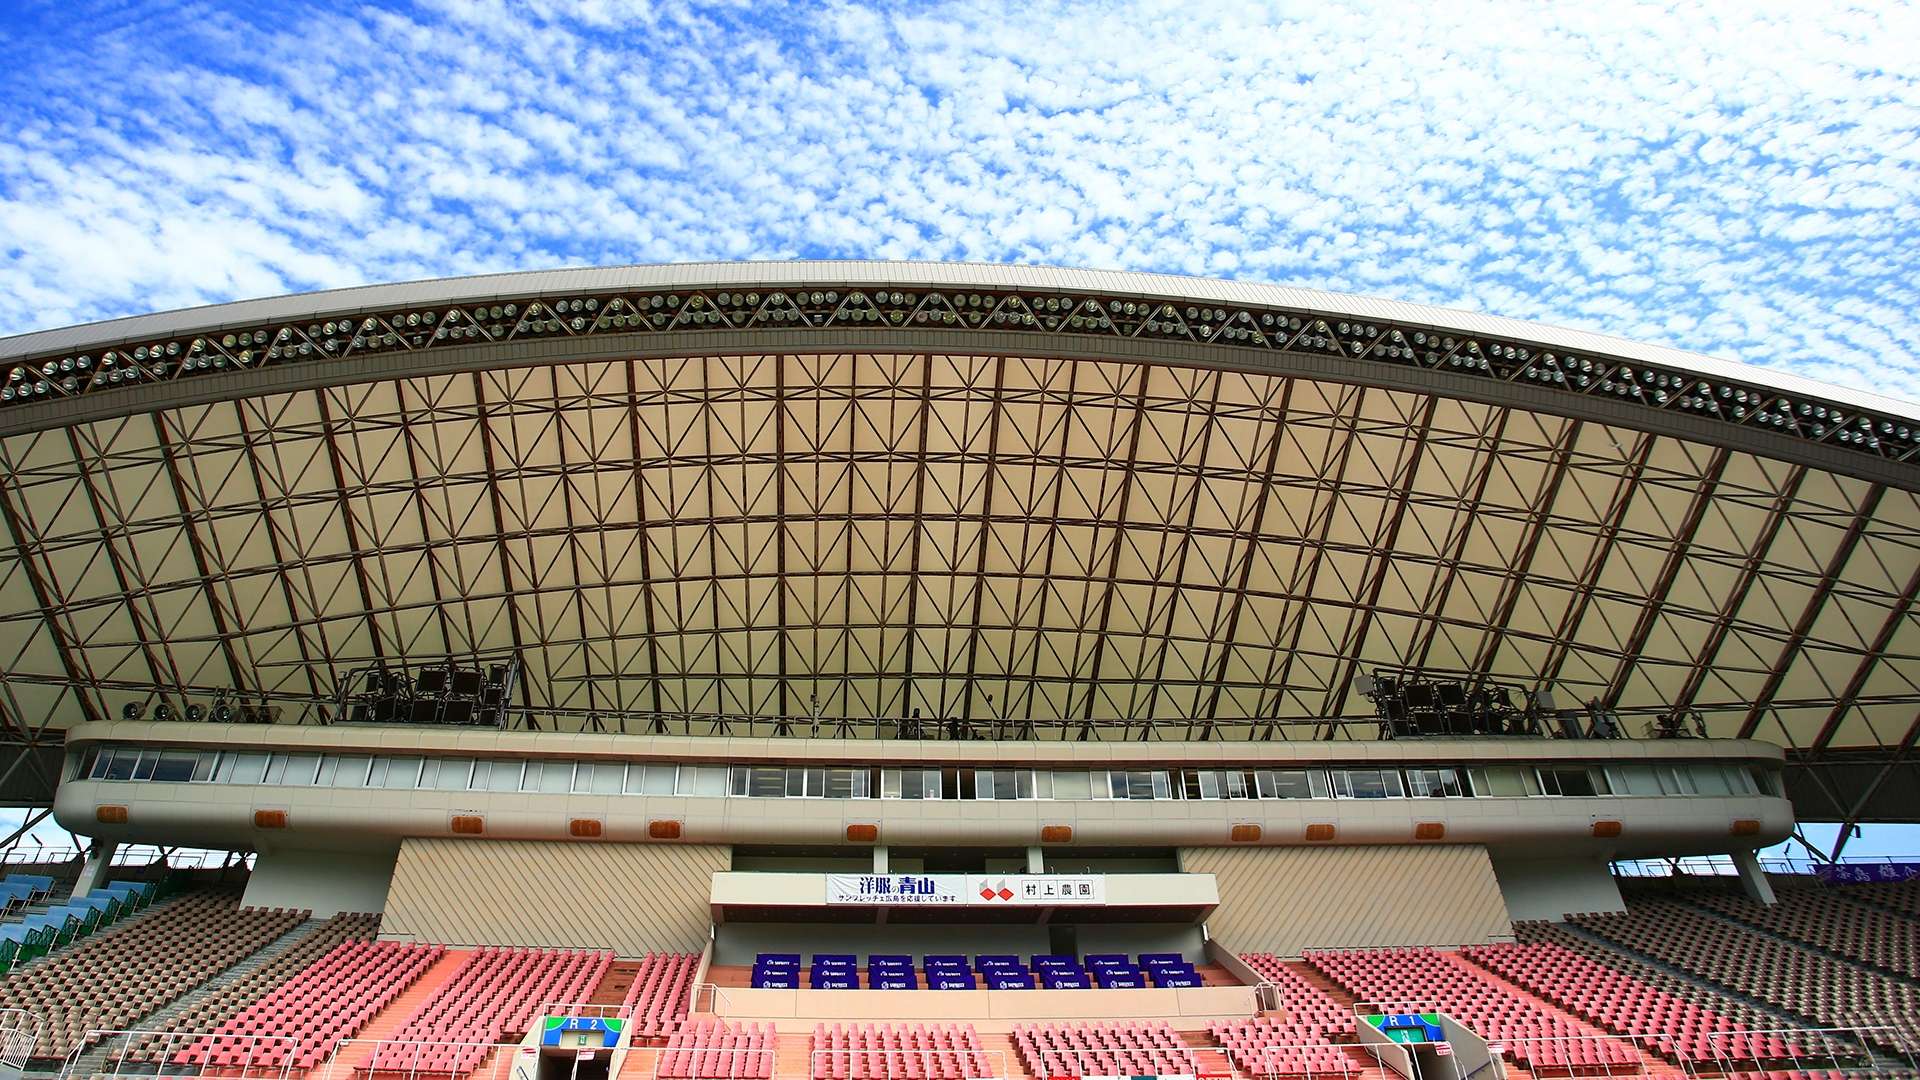 20210813_Edion_Stadium_Hiroshima